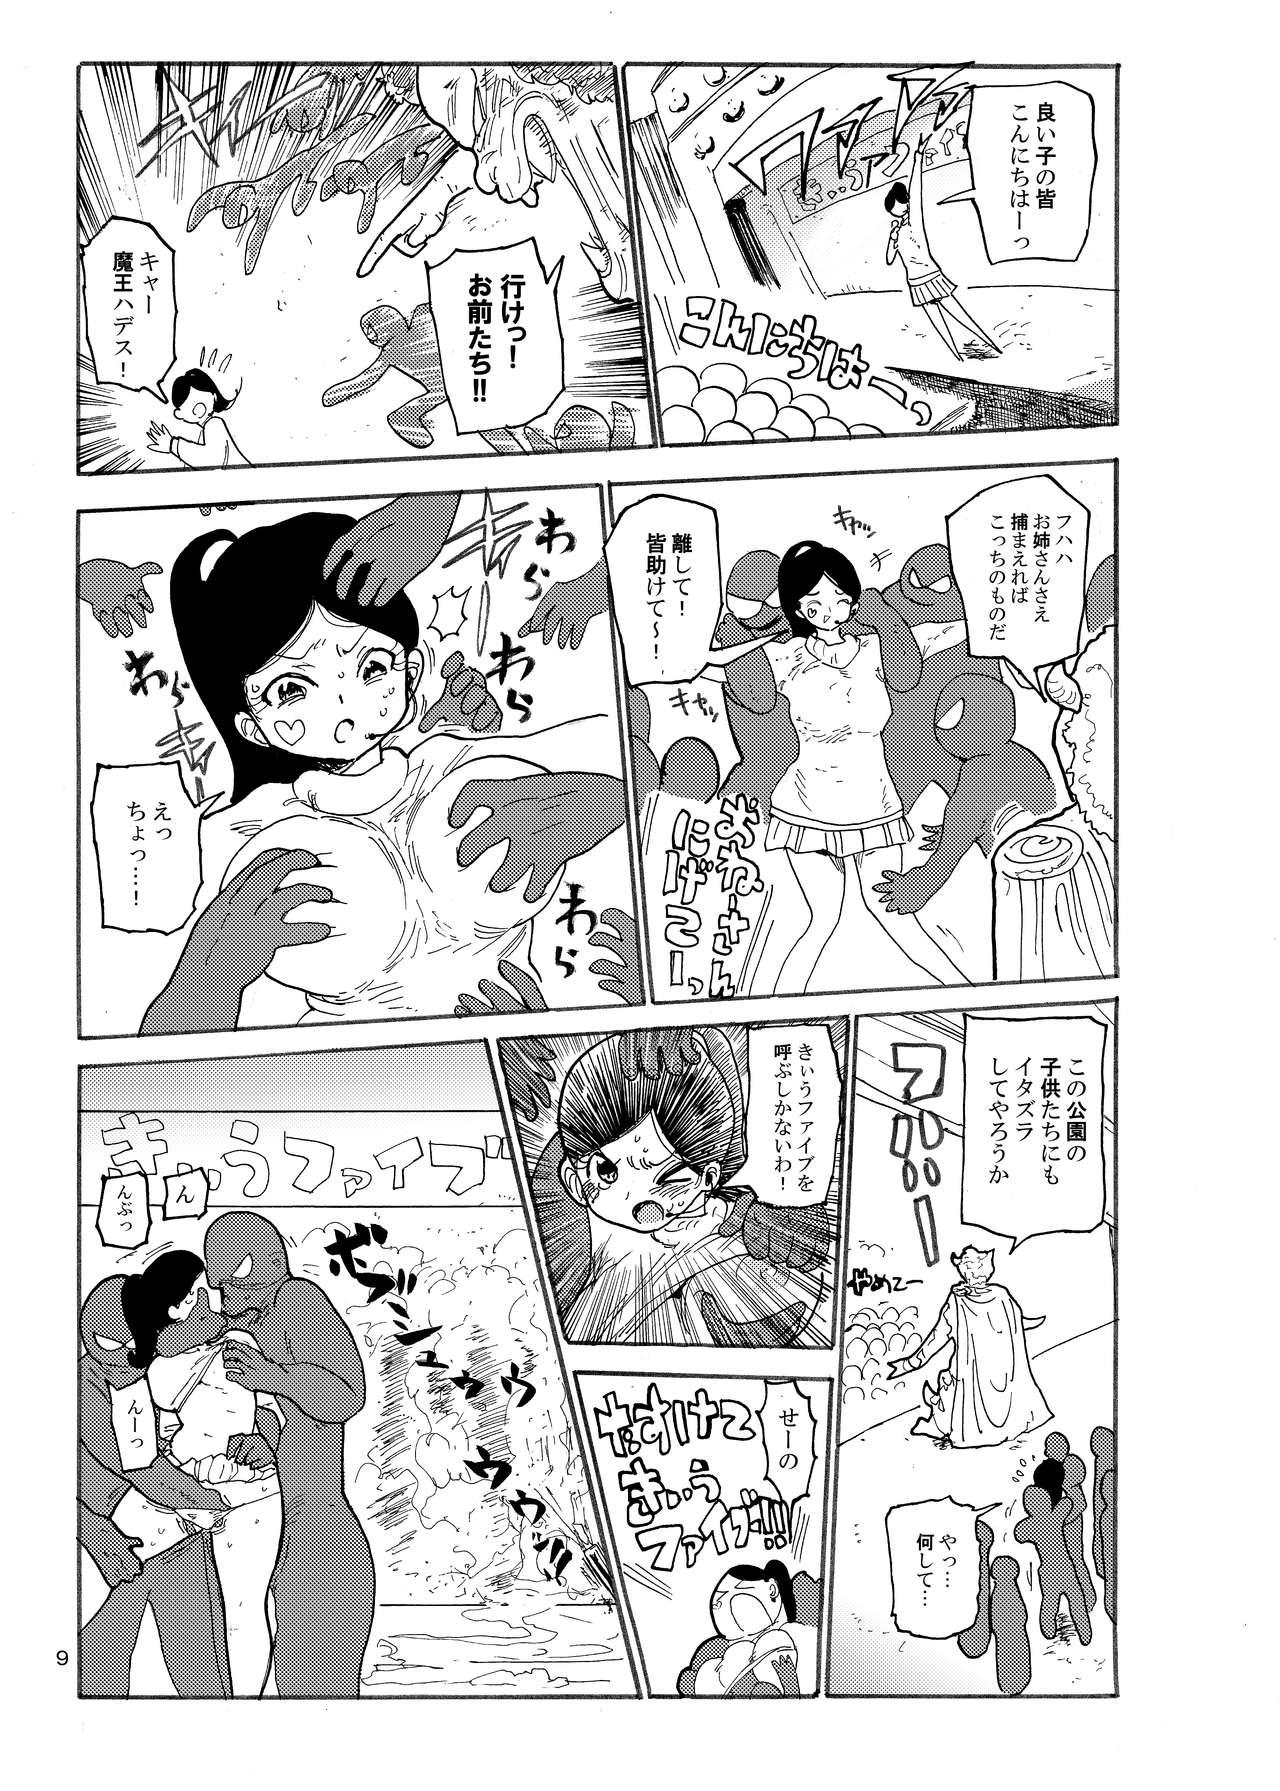 Massive Fuyu ni mo Nandemo Chousa Shoujo no Doujinshi ga Deta? Wakarimashita Chousa Shimasu Rope - Page 8